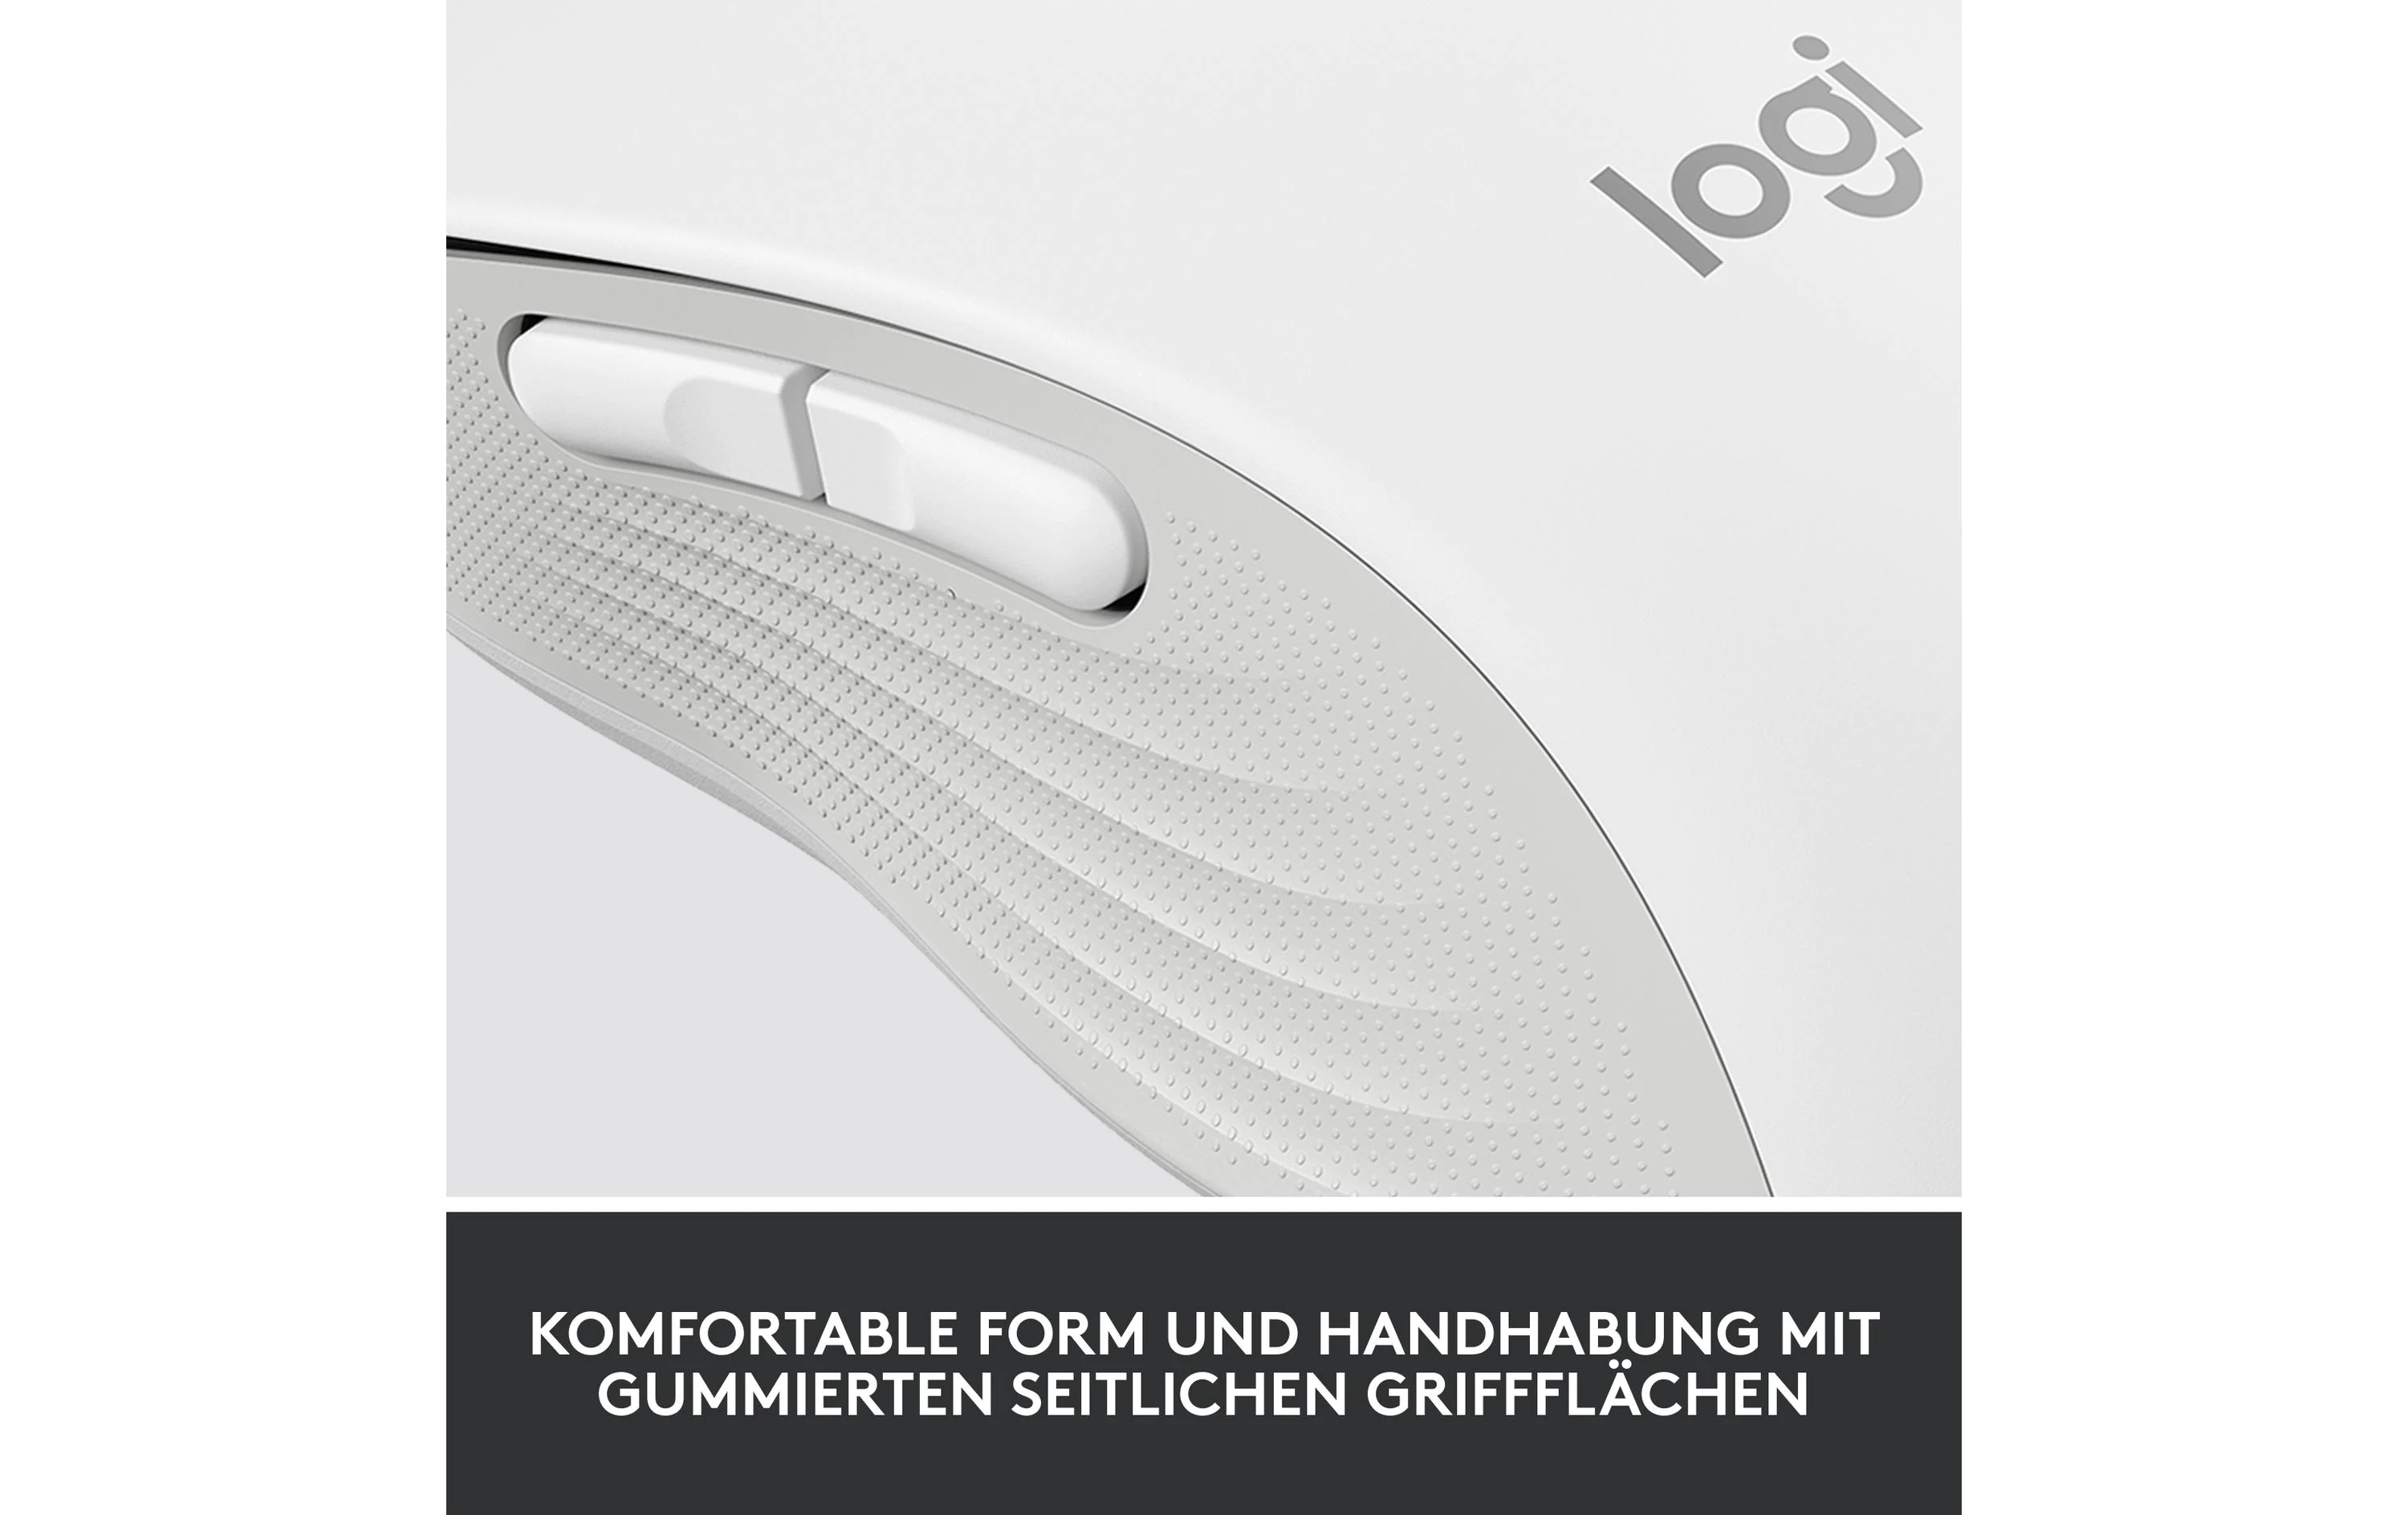 Logitech Maus Signature M650 L, off-white